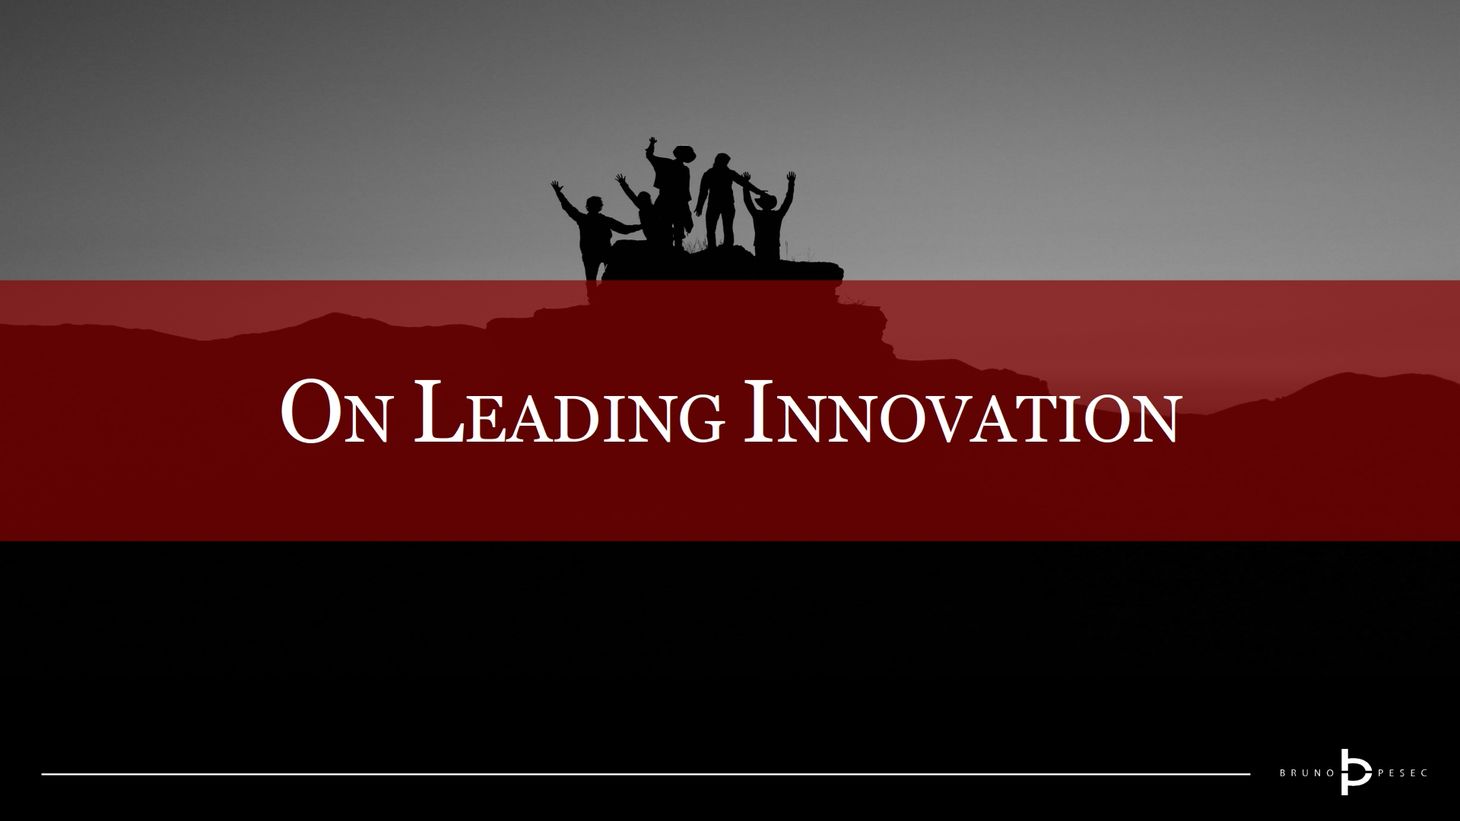 On leading innovation